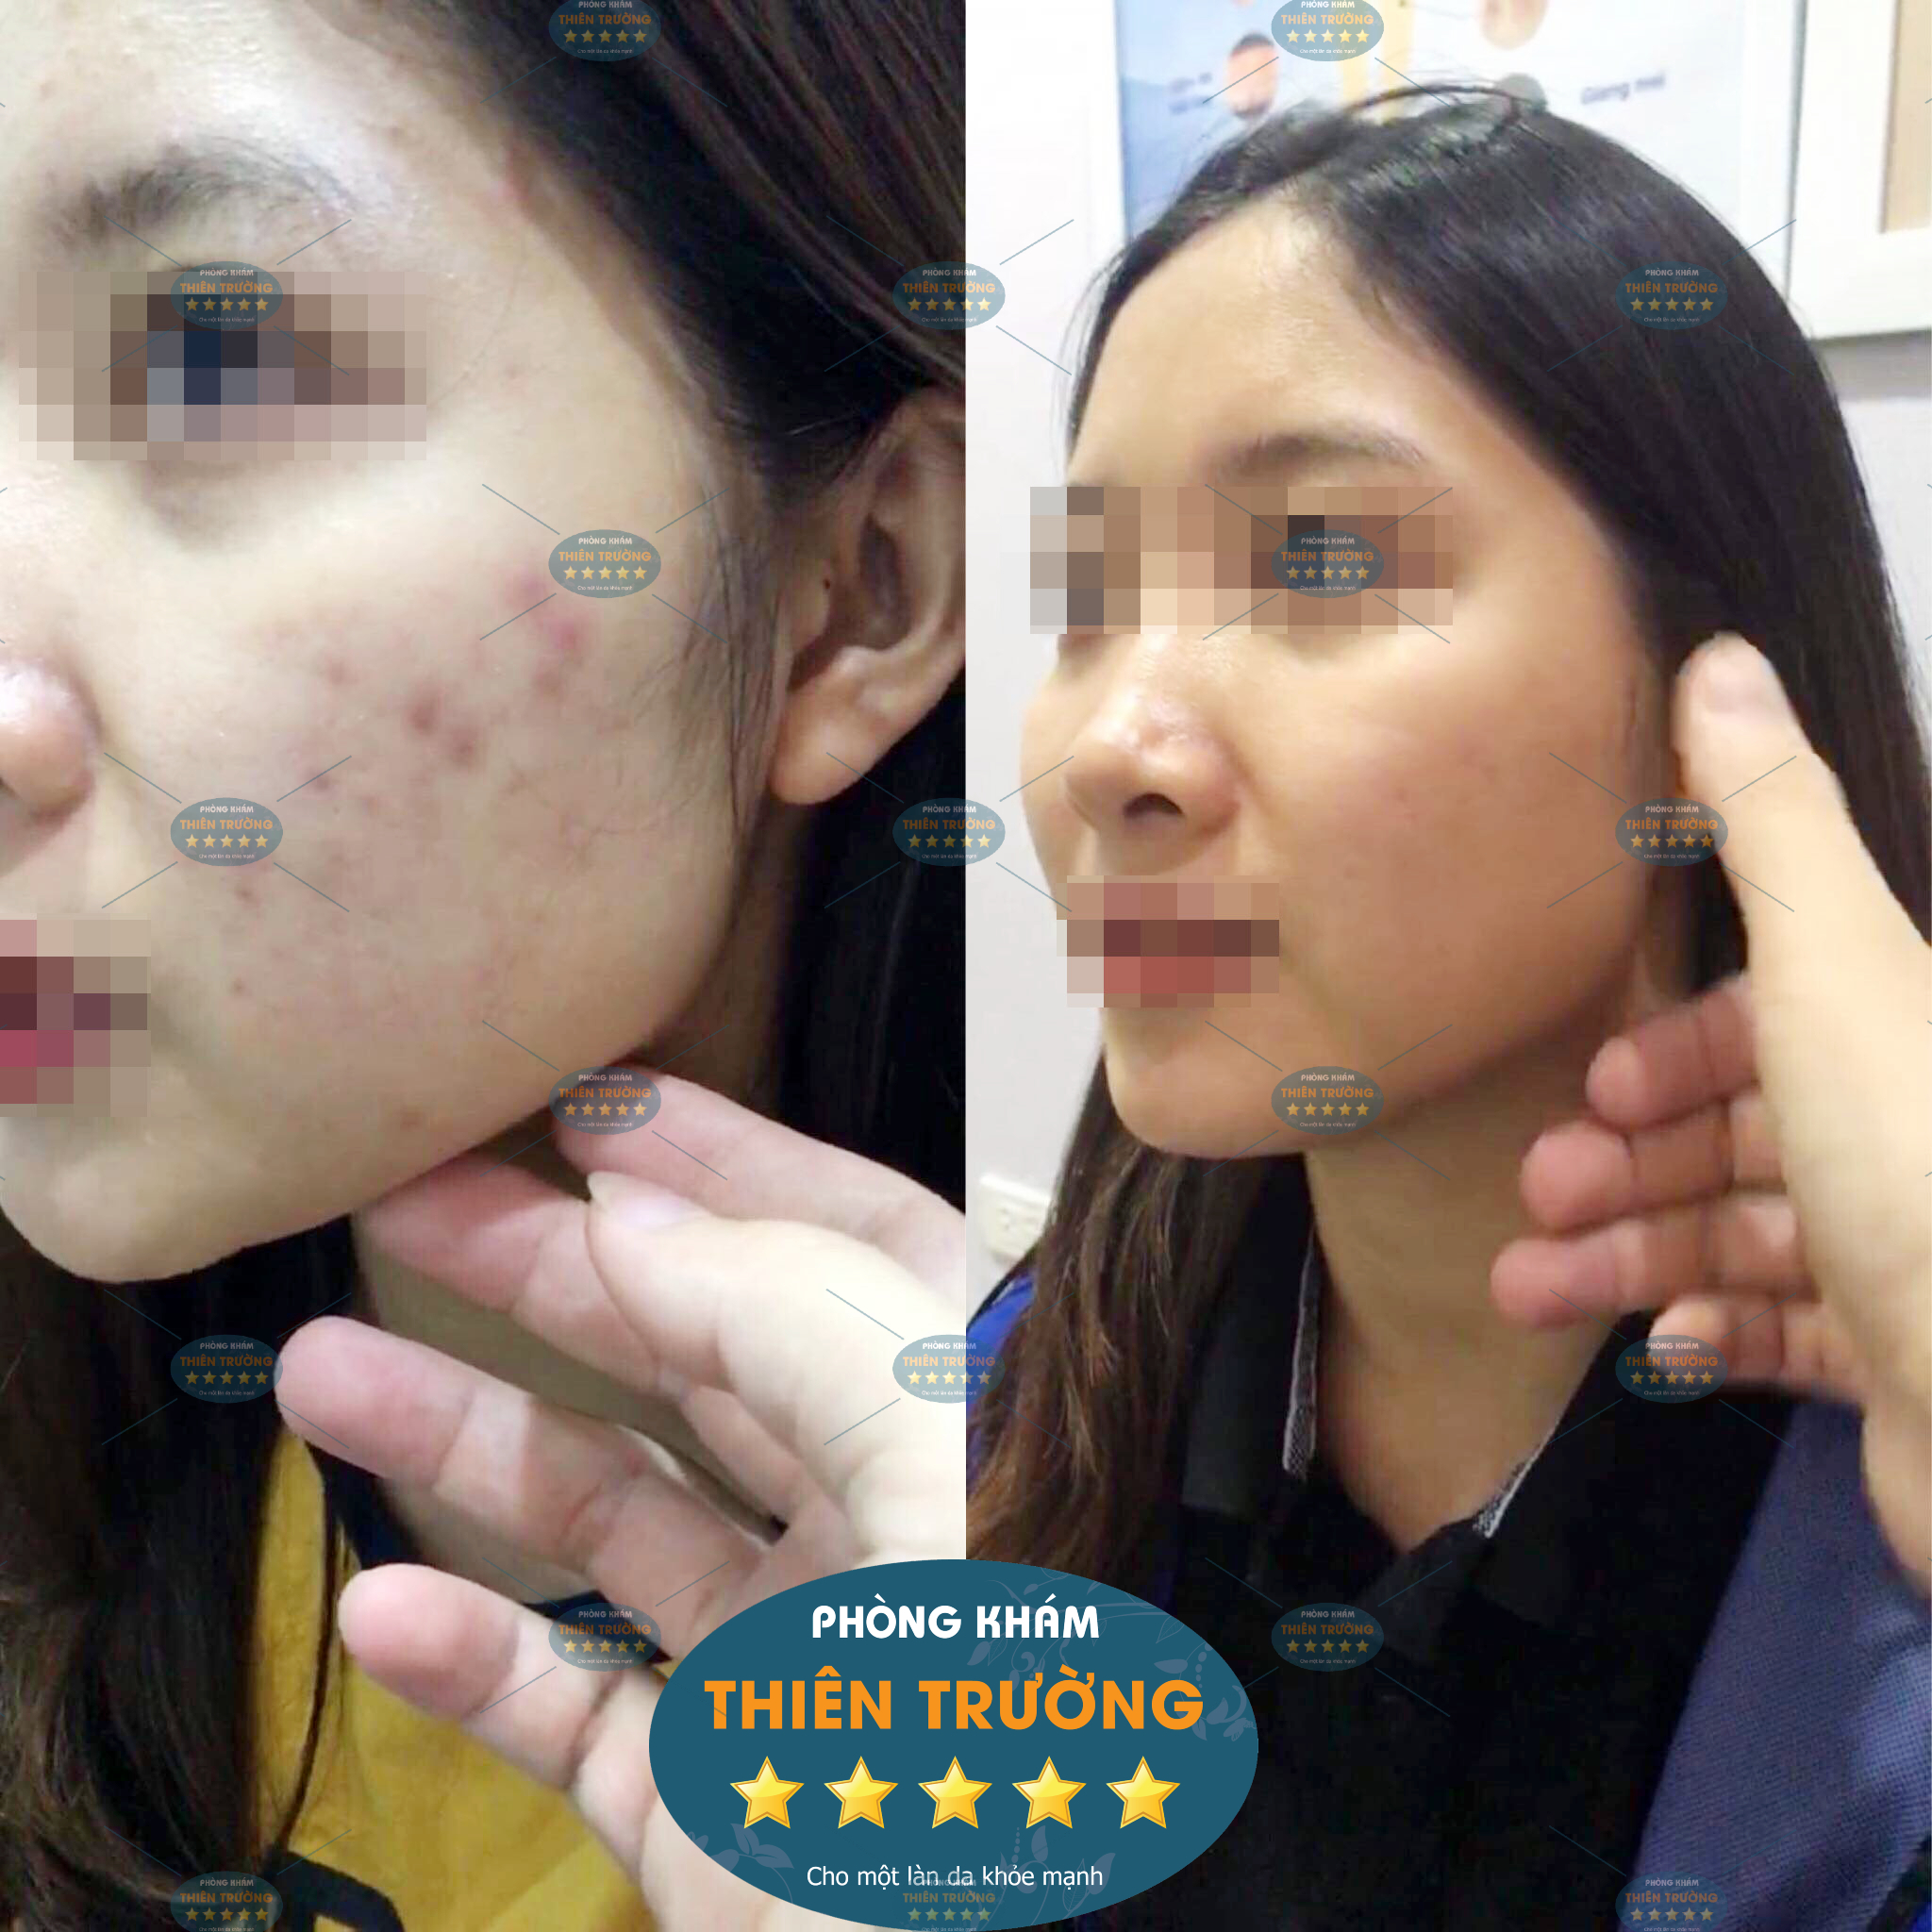 Hình ảnh: Trước và sau khi điều trị tại Phòng khám Da liễu thẩm mỹ Thiên Trường.